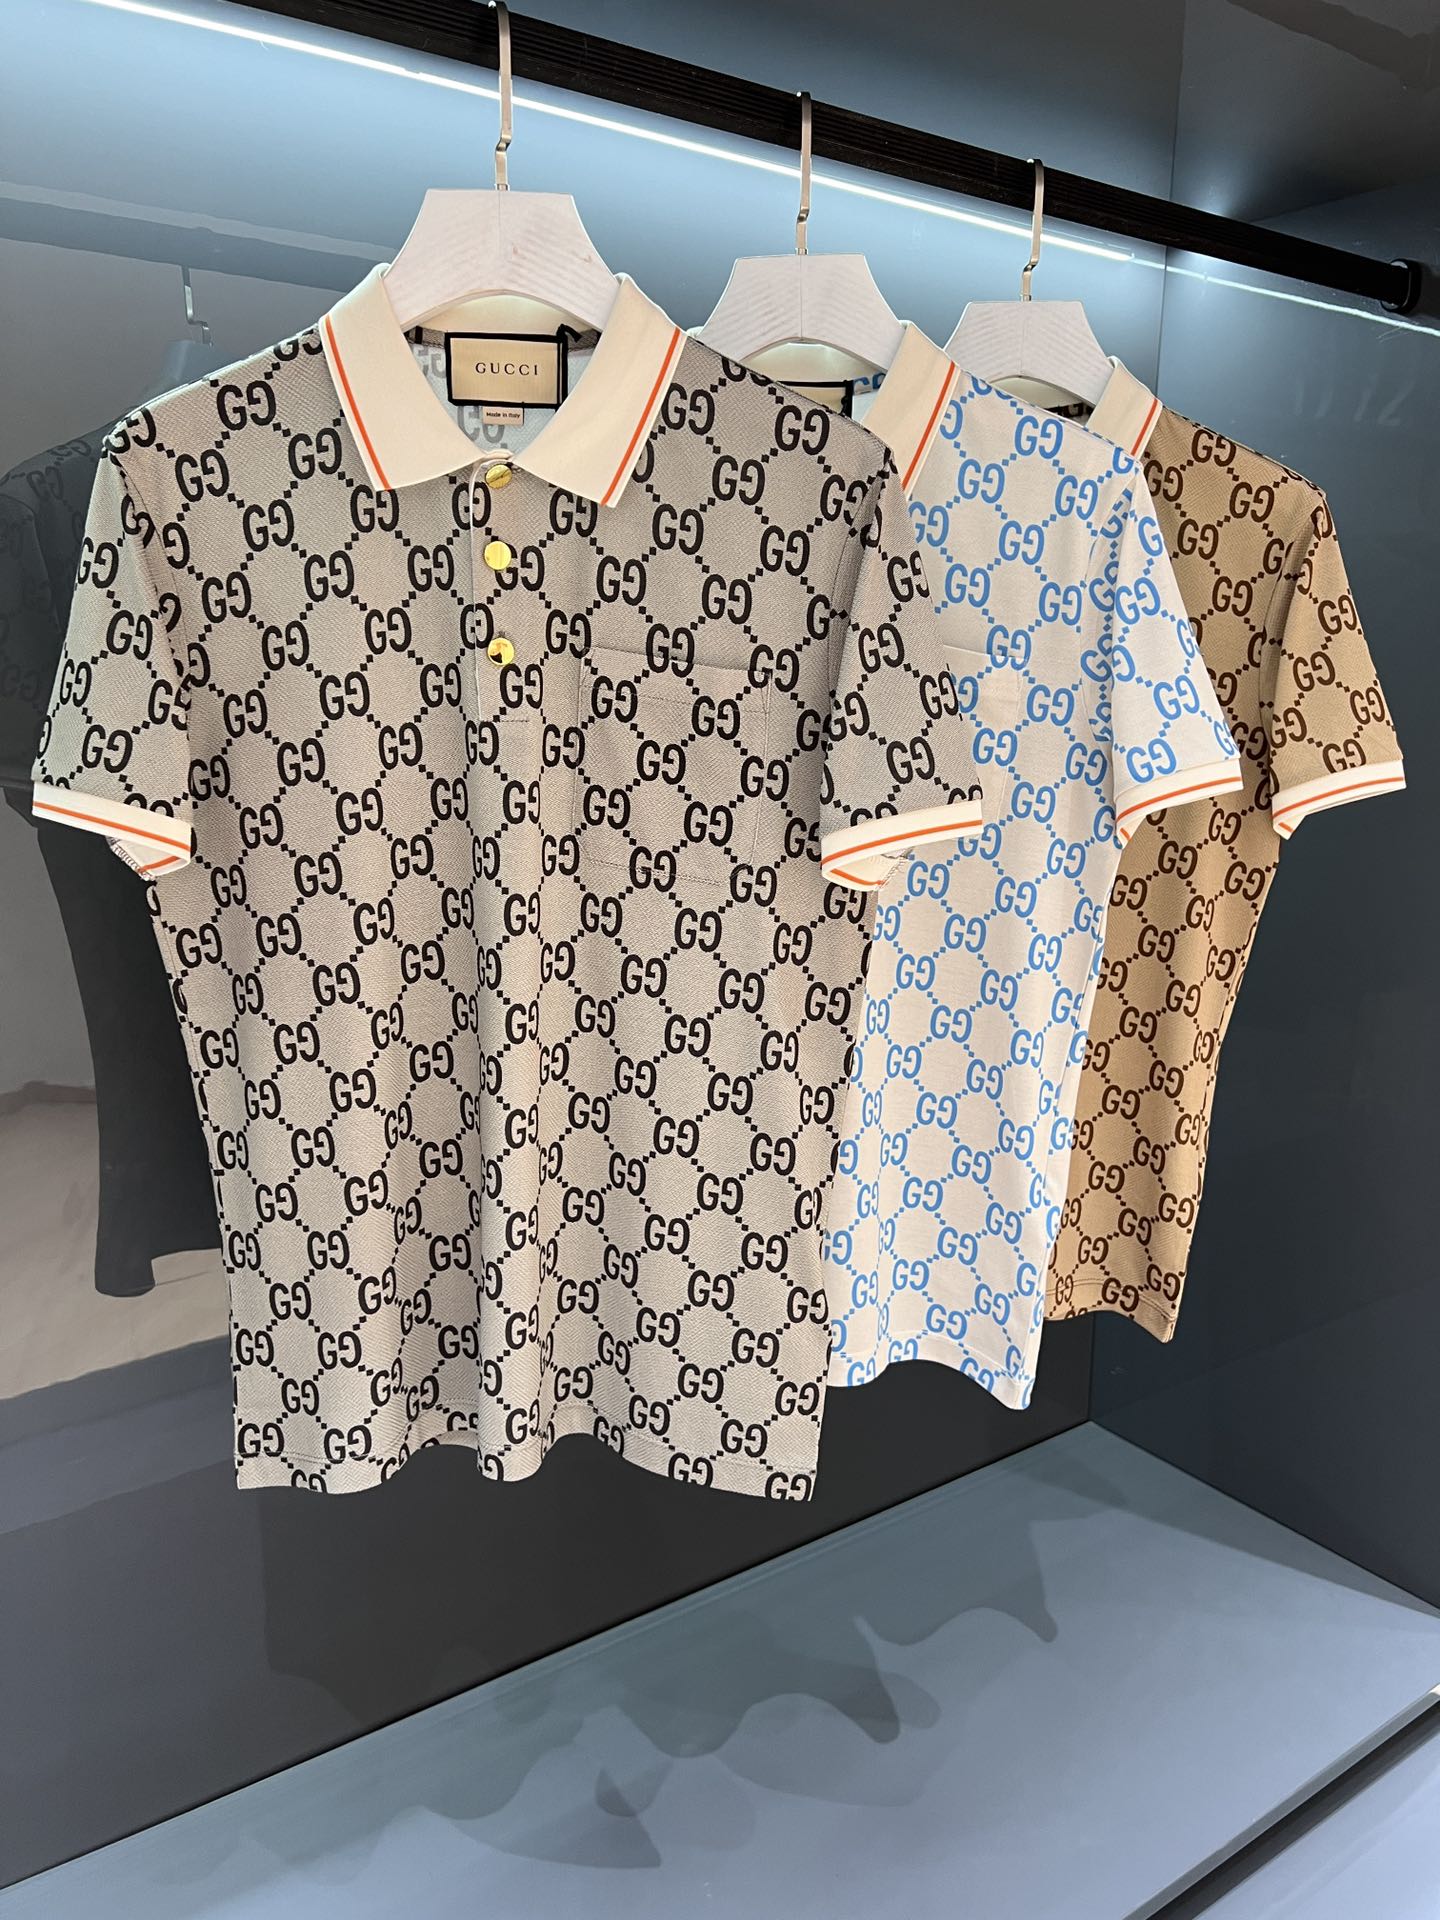 Gucci Abbigliamento Polo T-Shirt Beige Blu Grigio Uomini Cotone Lavorazione a maglia Seta Collezione estiva Vintage Maniche corte